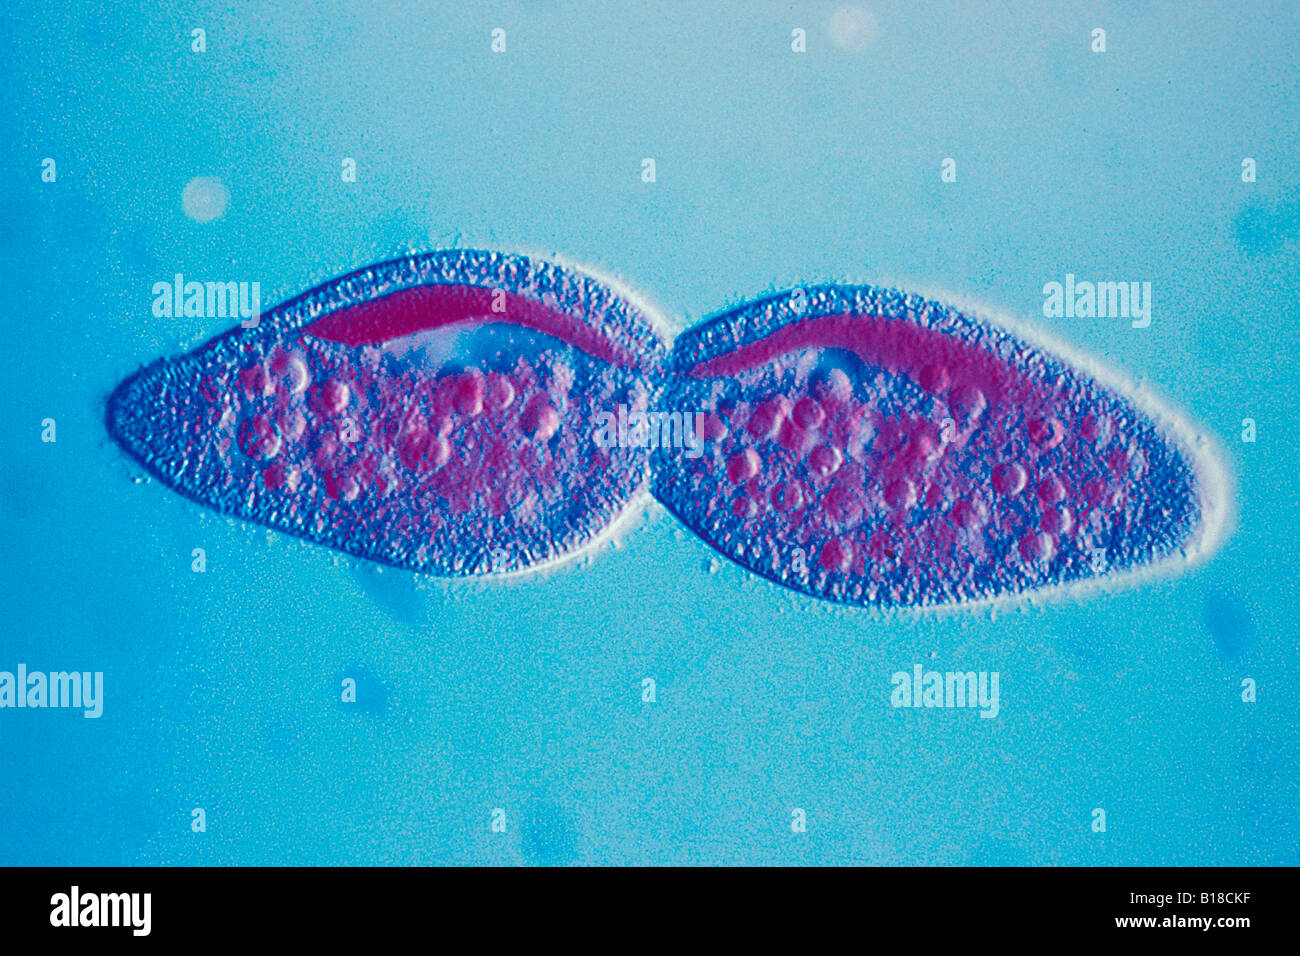 Paramecium division under optical microscope Stock Photo